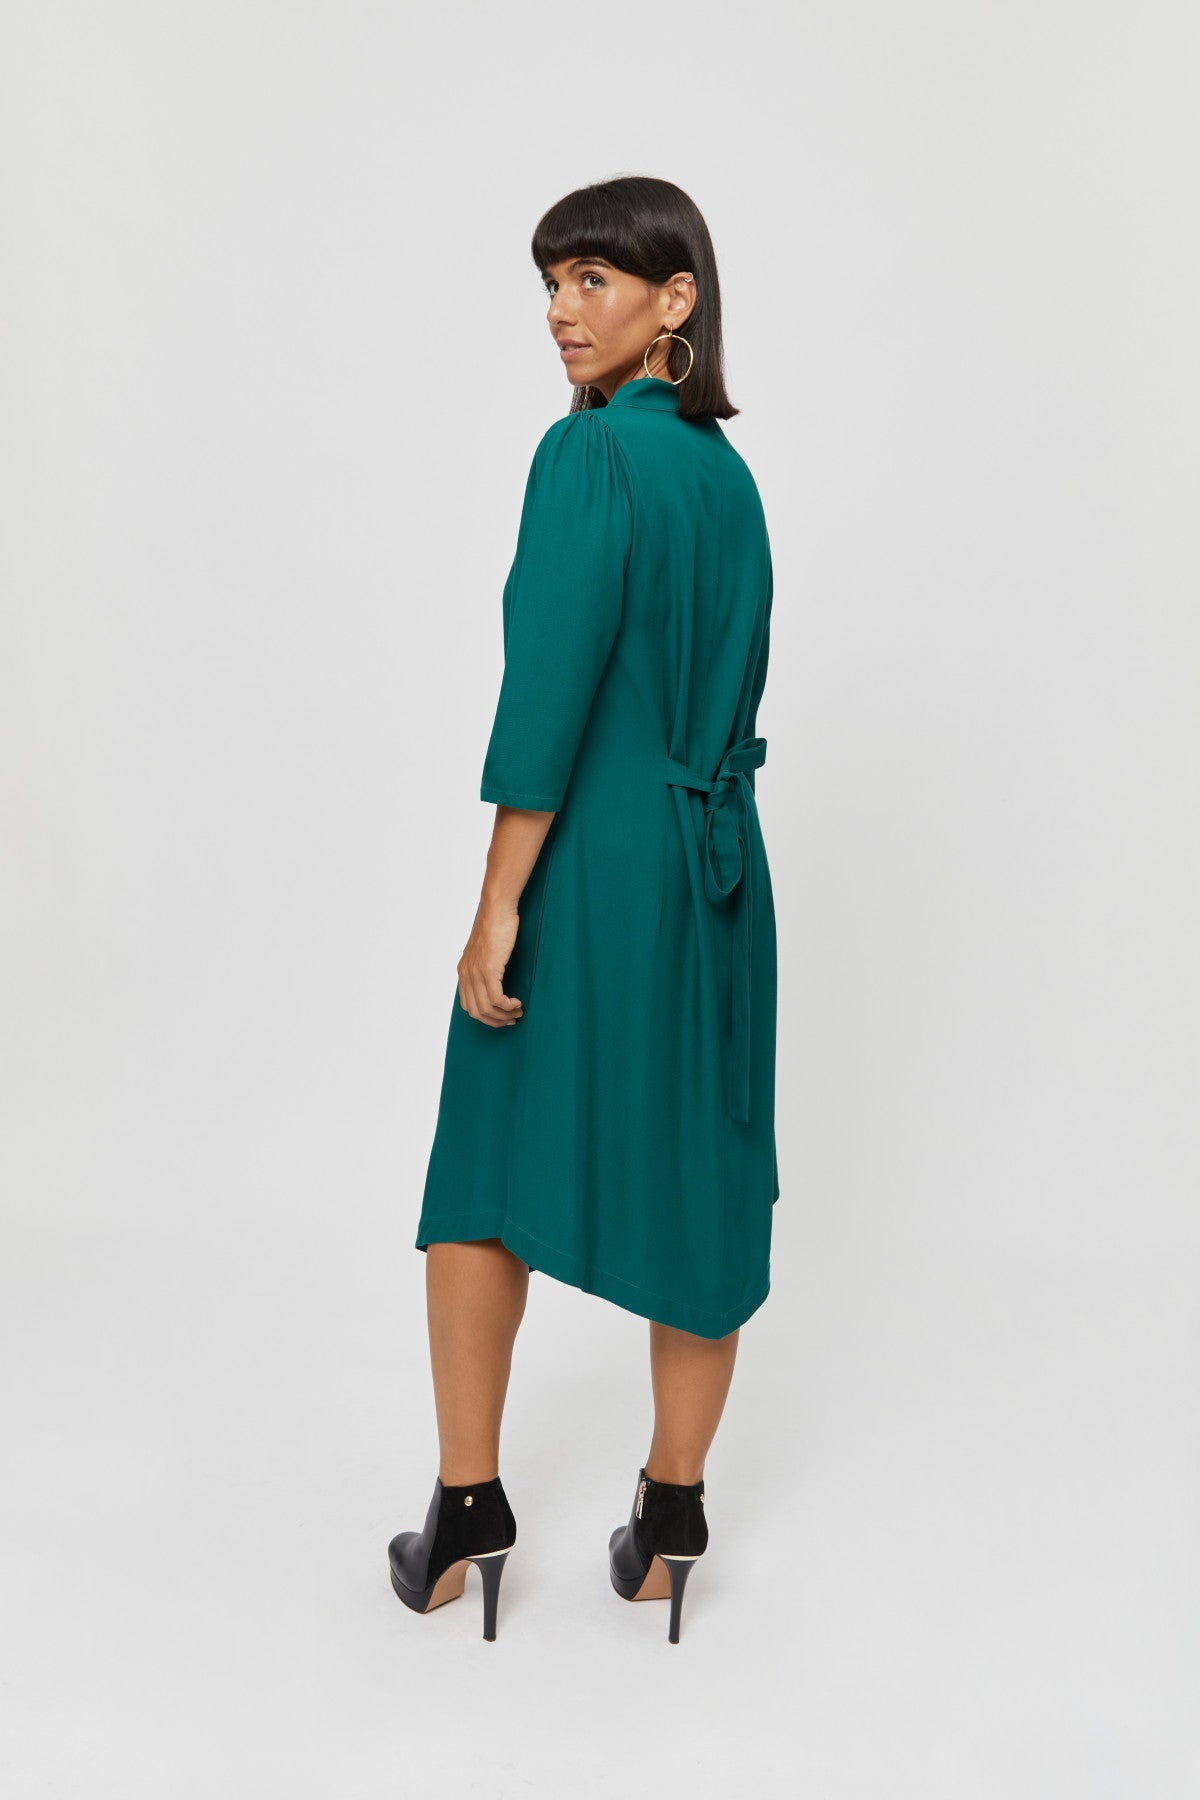 Grünes Kleid Suzi aus 100% Viskose von Ayani